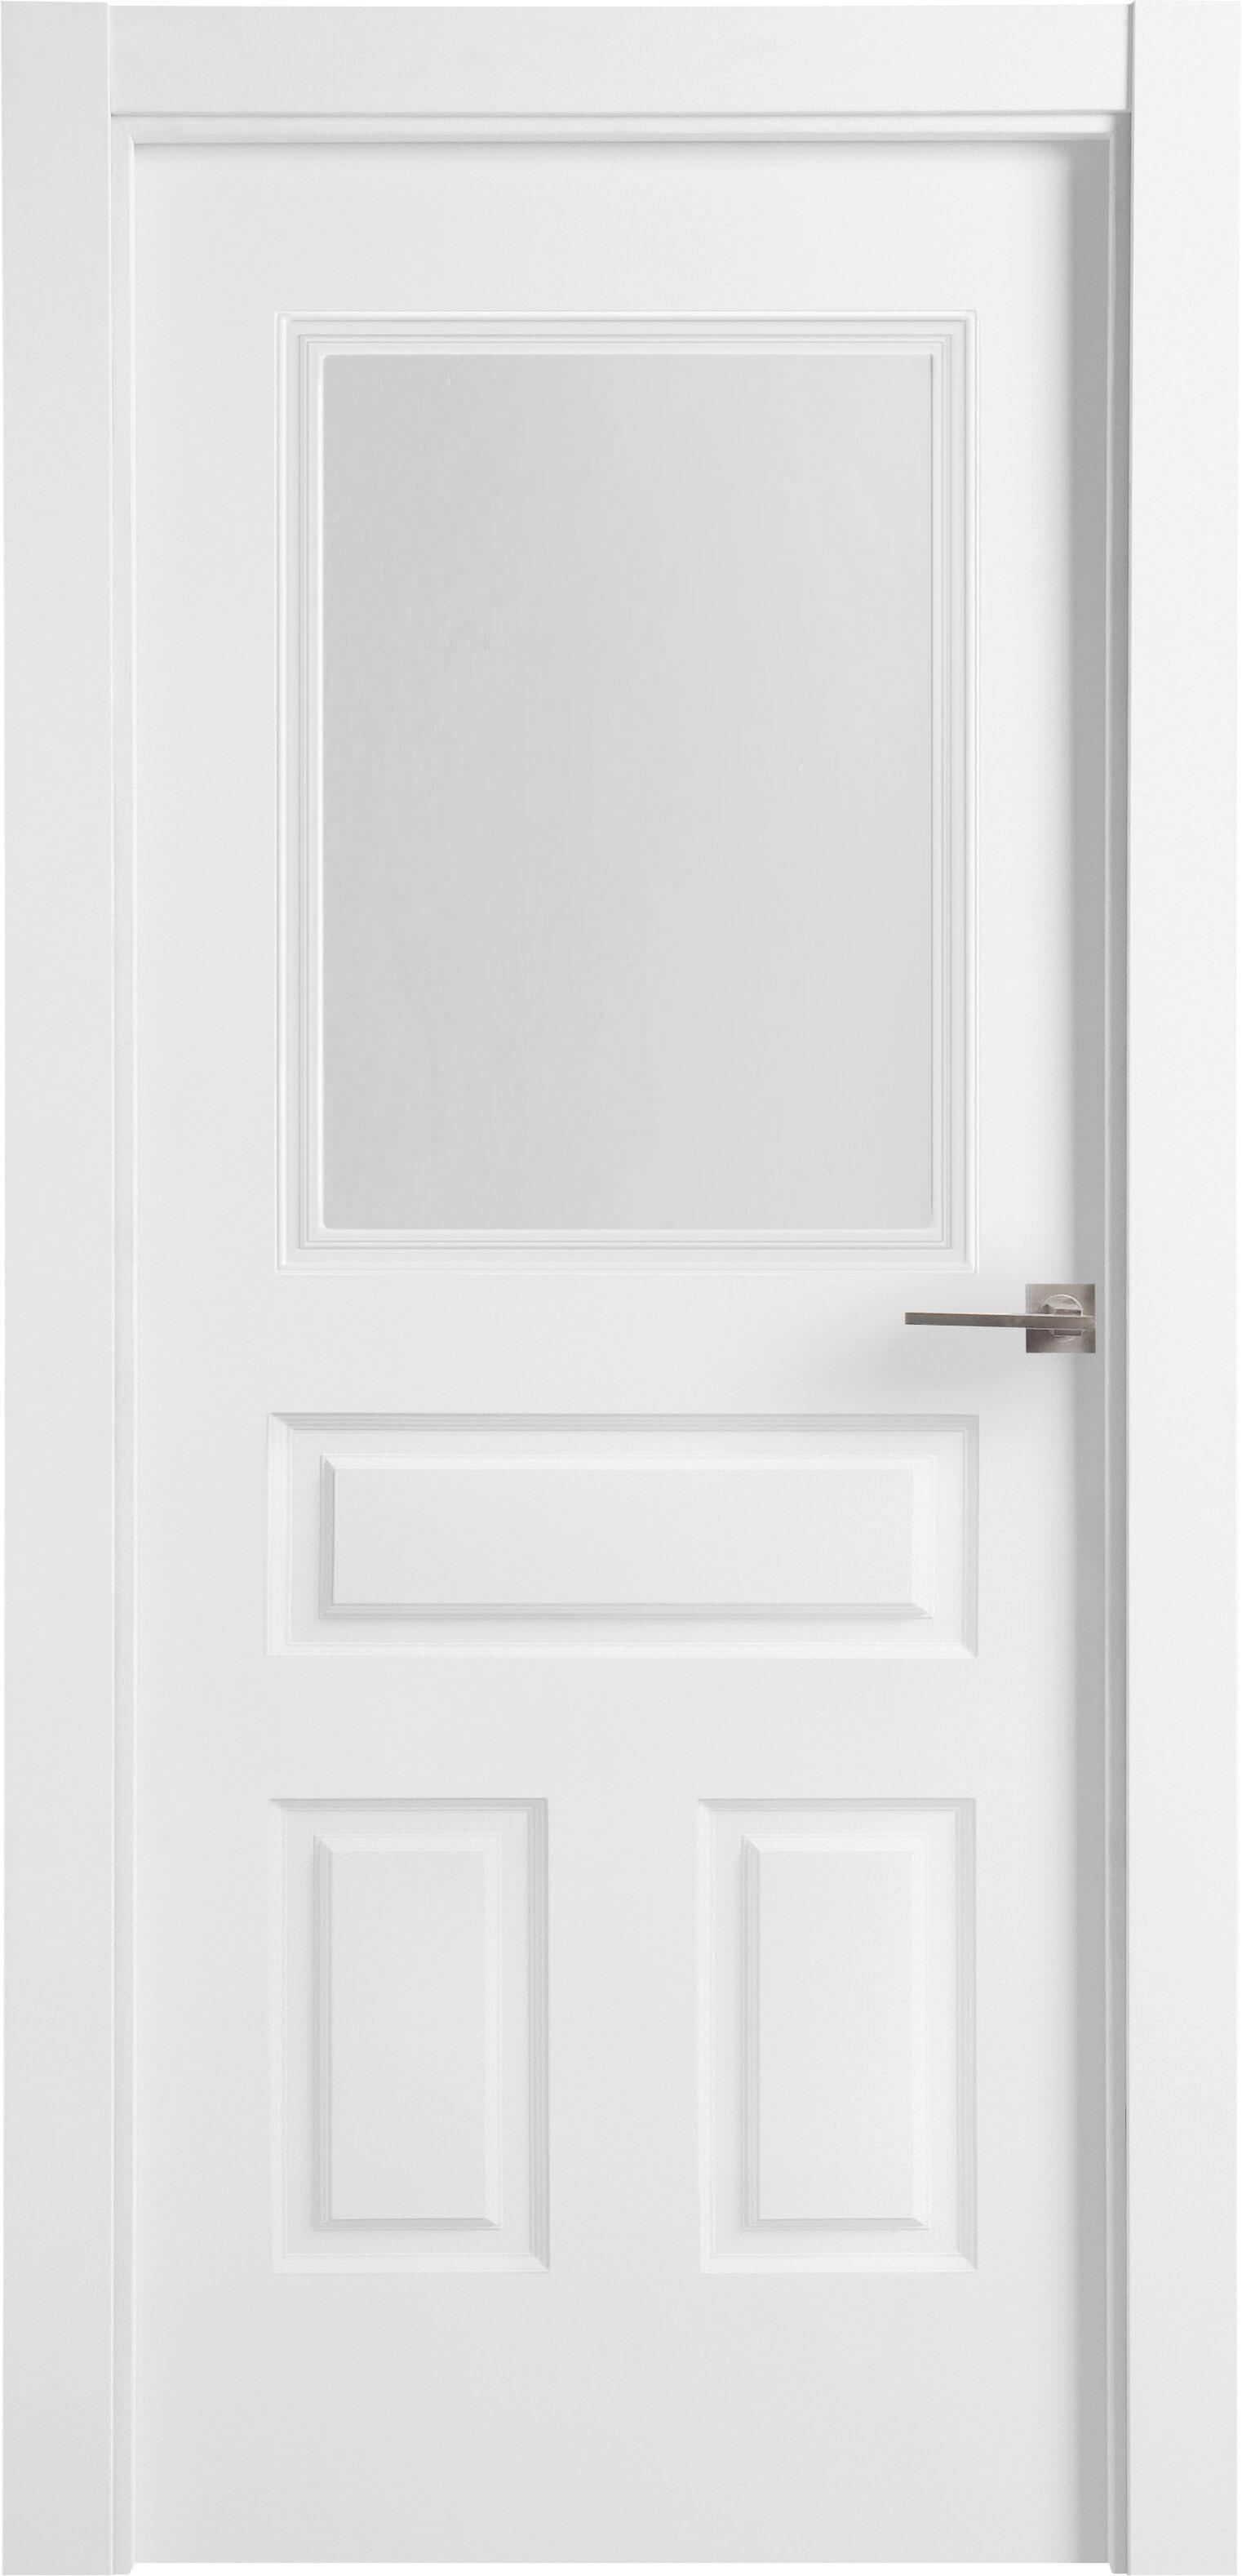 Puerta indiana plus blanco apertura izquierda con cristal de 92,5cm